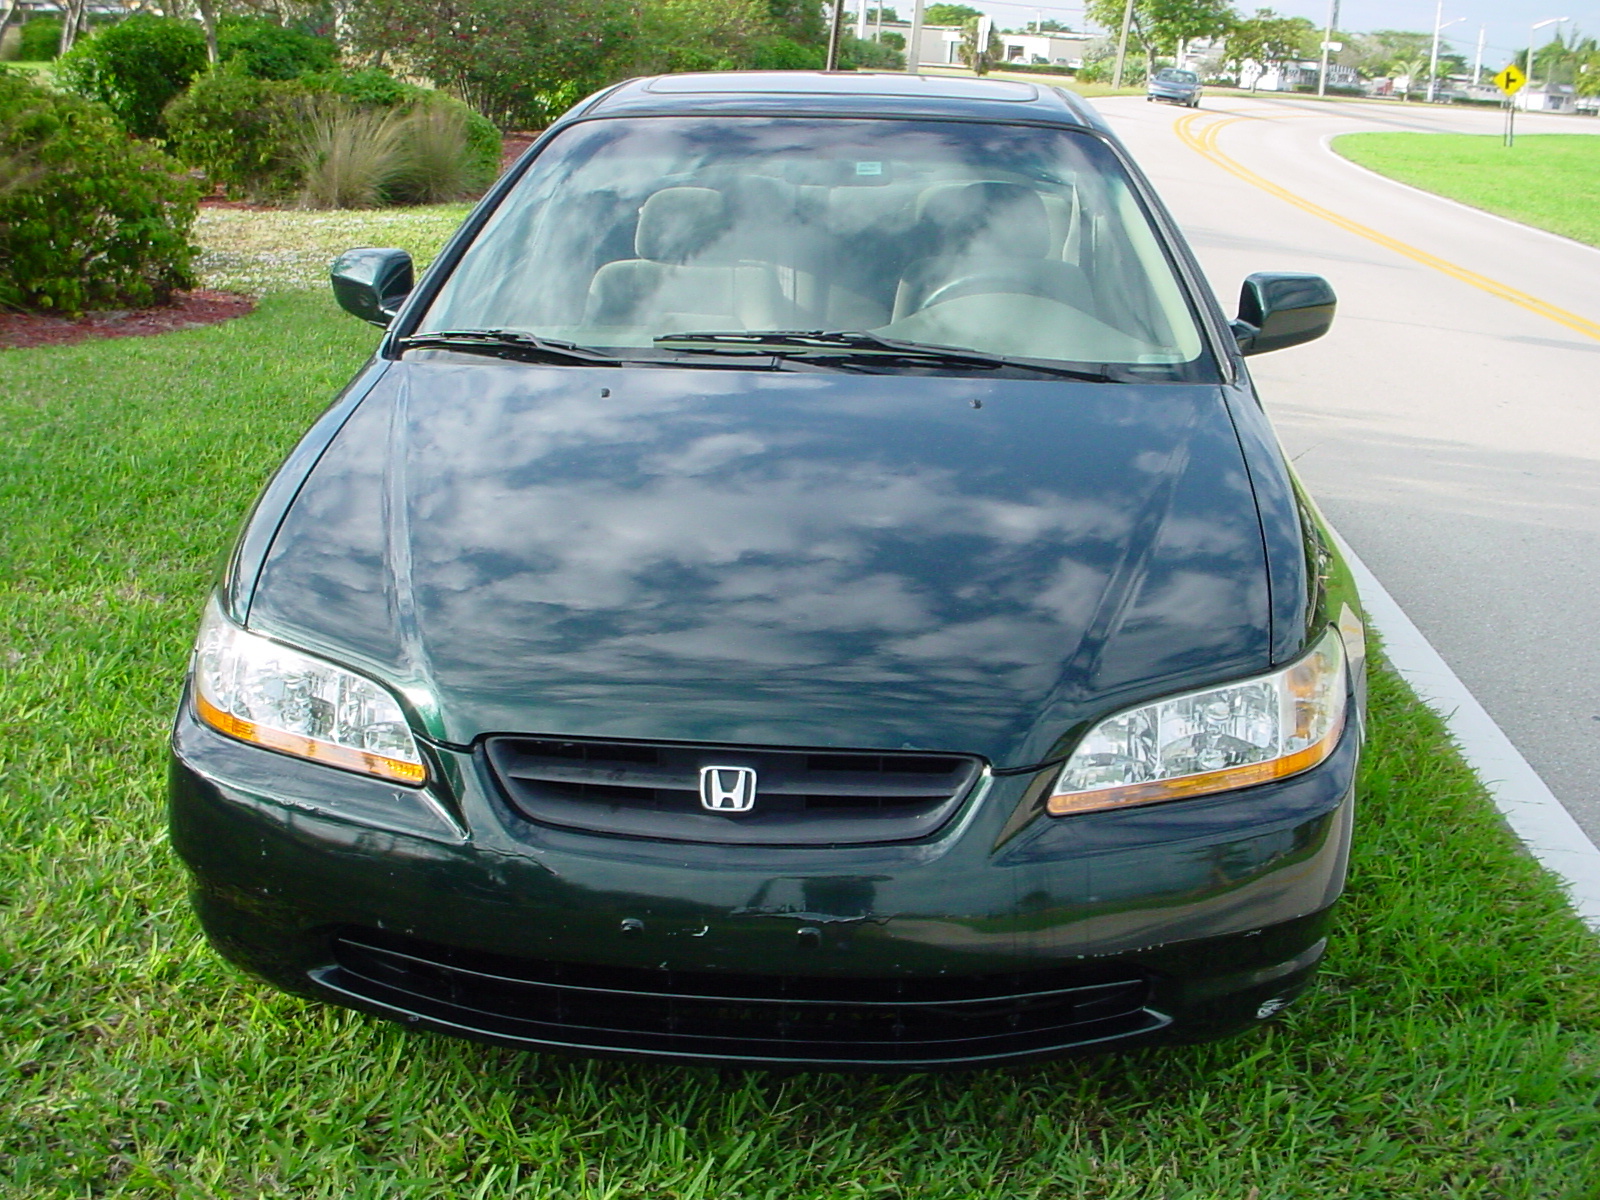 1999 Honda accord ex consumer report #5